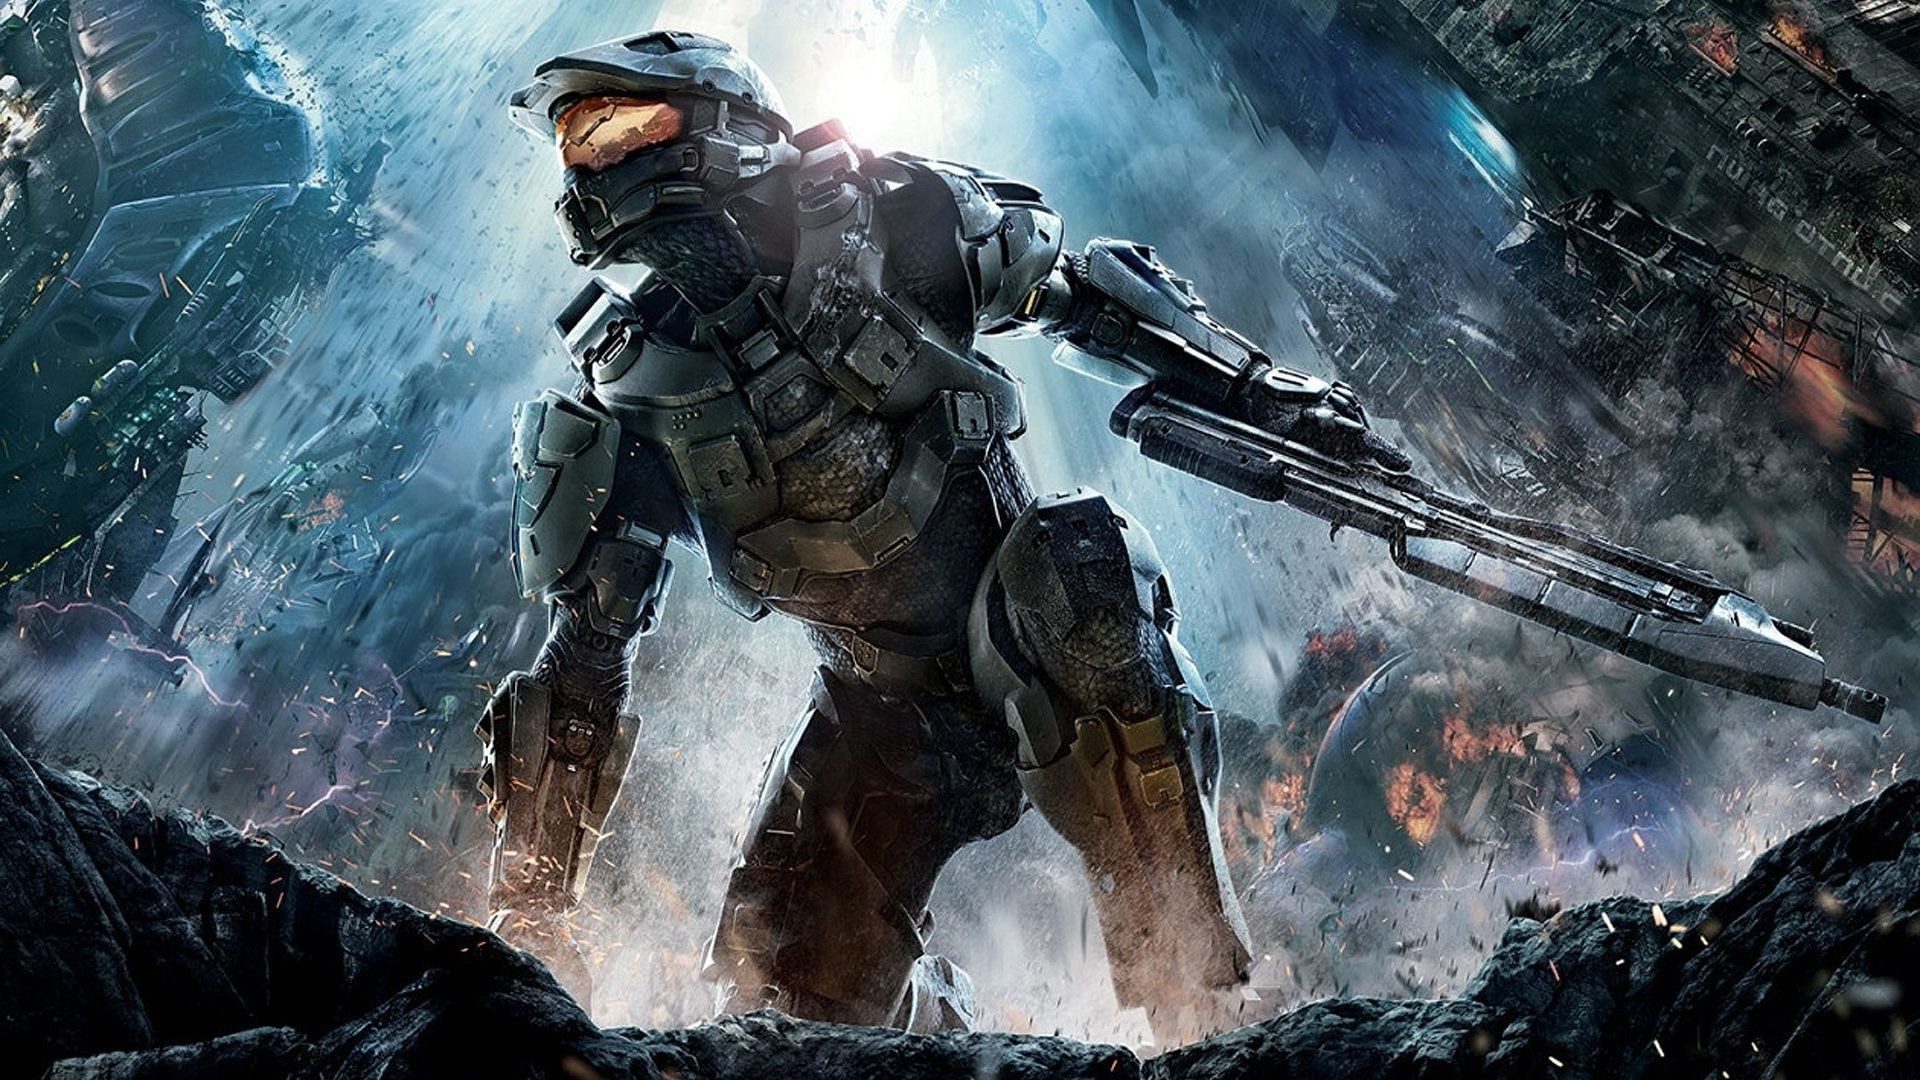 Halo 4 finns äntligen på Steam och Microsoft Store idag